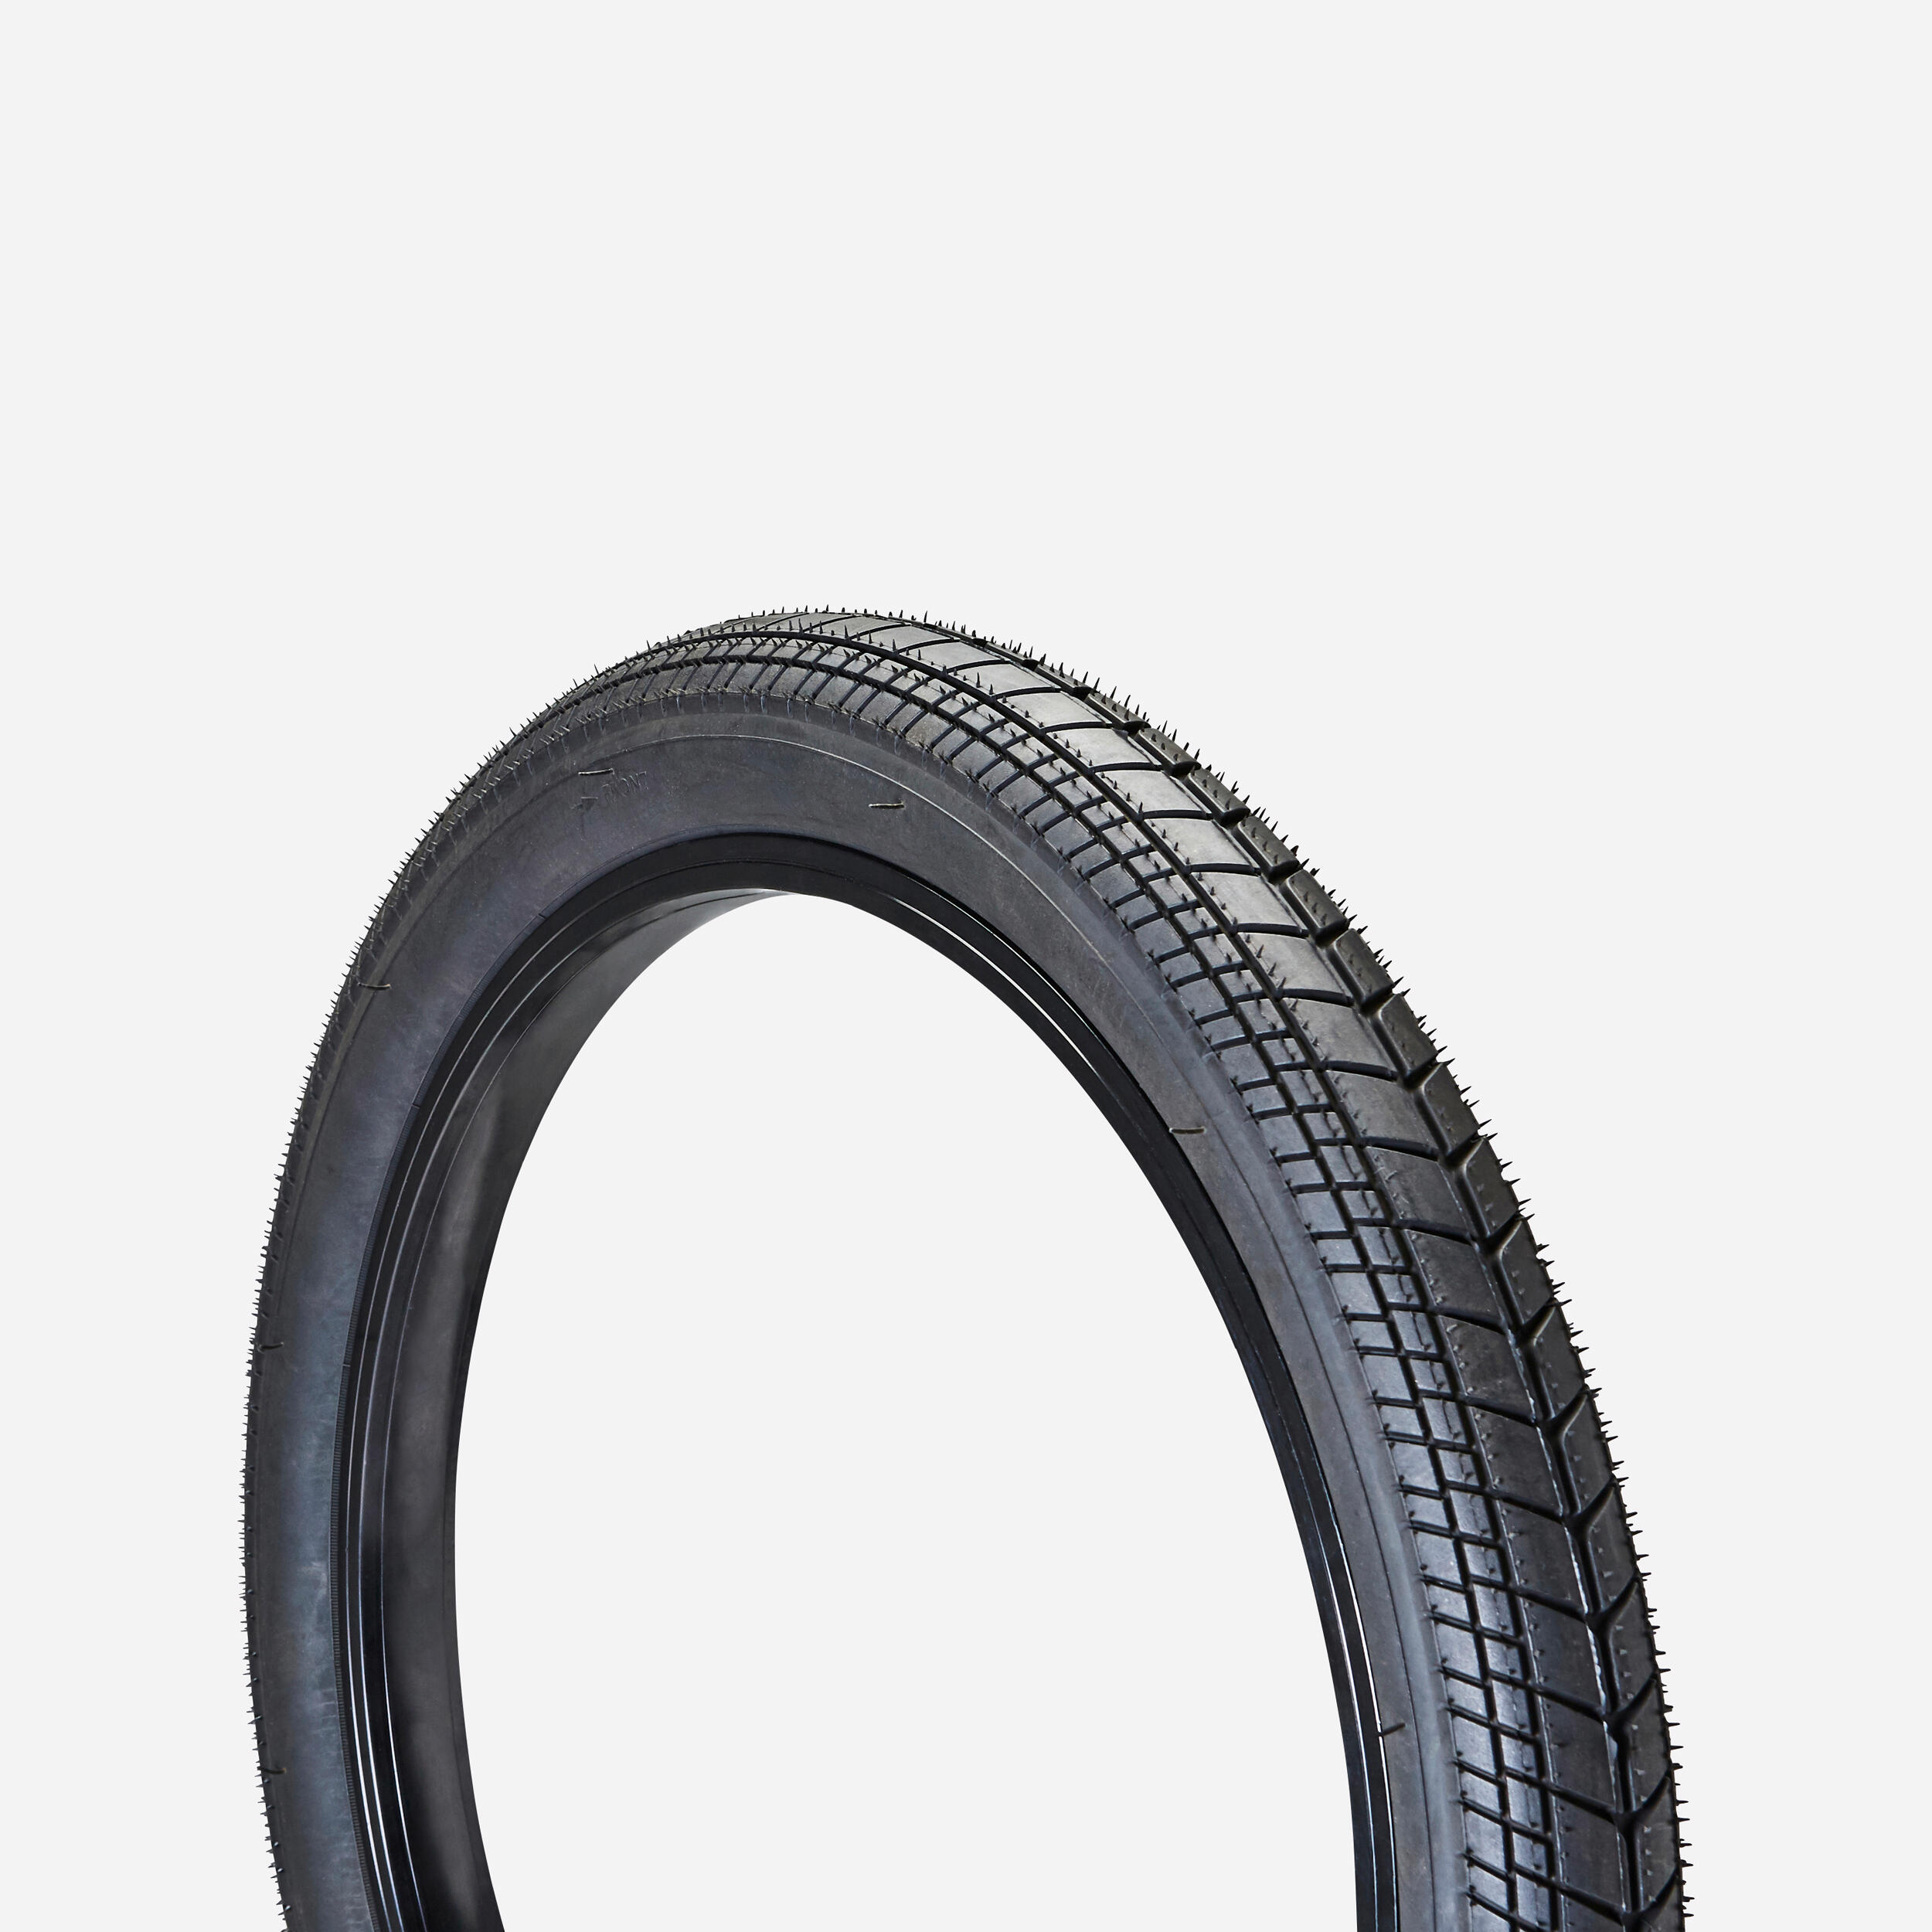 20x2 bike tire